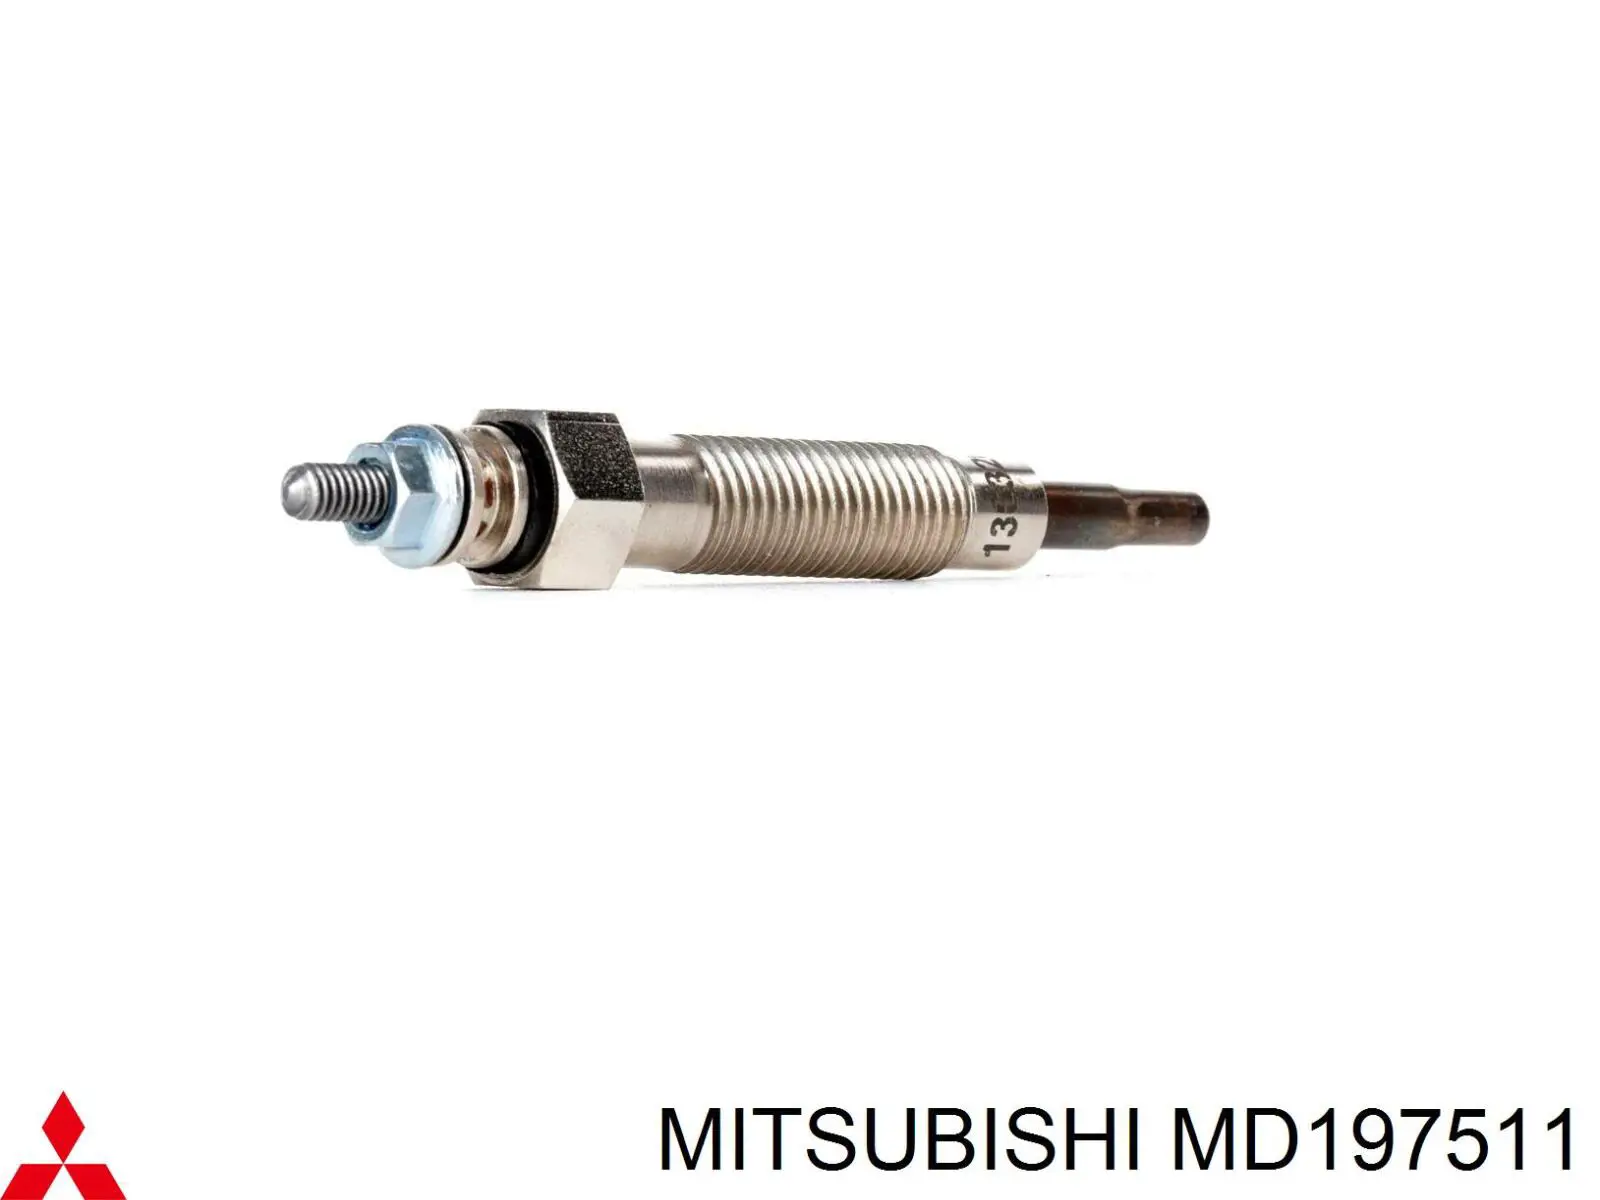 MD197511 Mitsubishi bujía de precalentamiento